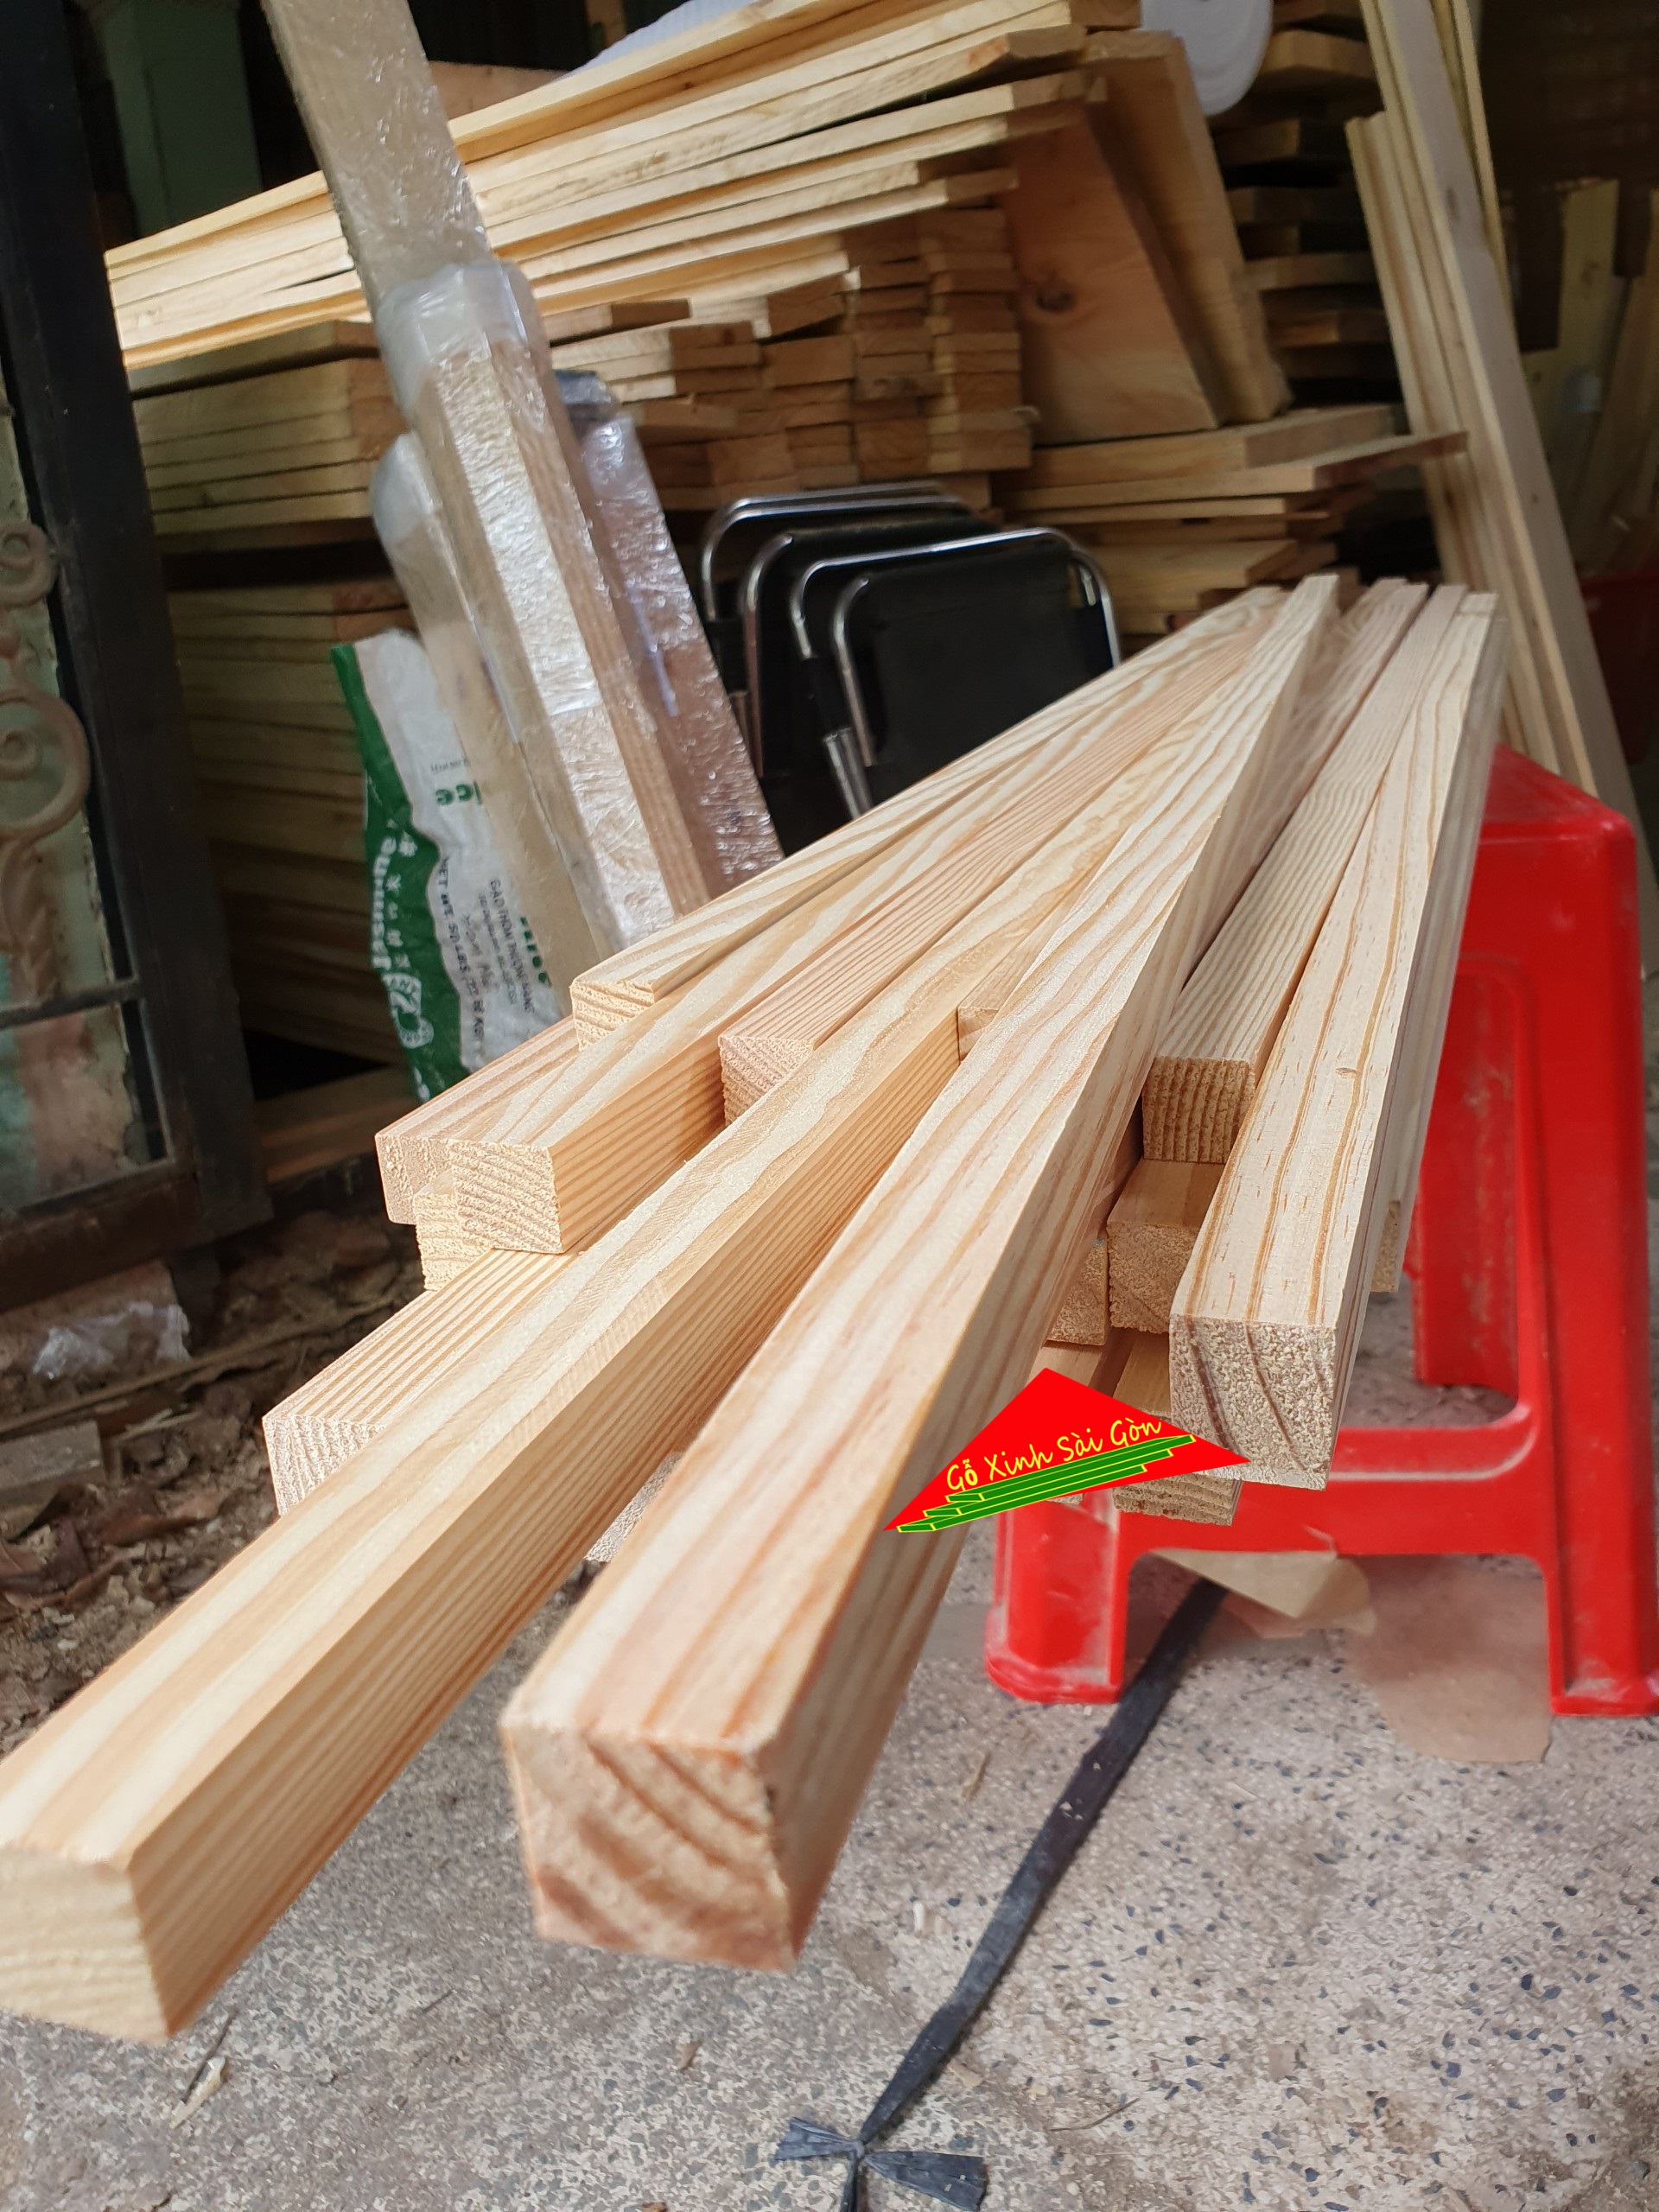 Thanh gỗ thông vuông 2cm ,dài 1m2 đã bào láng 4 mặt thích hợp dùng làm nẹp chỉ, đóng chuồng...